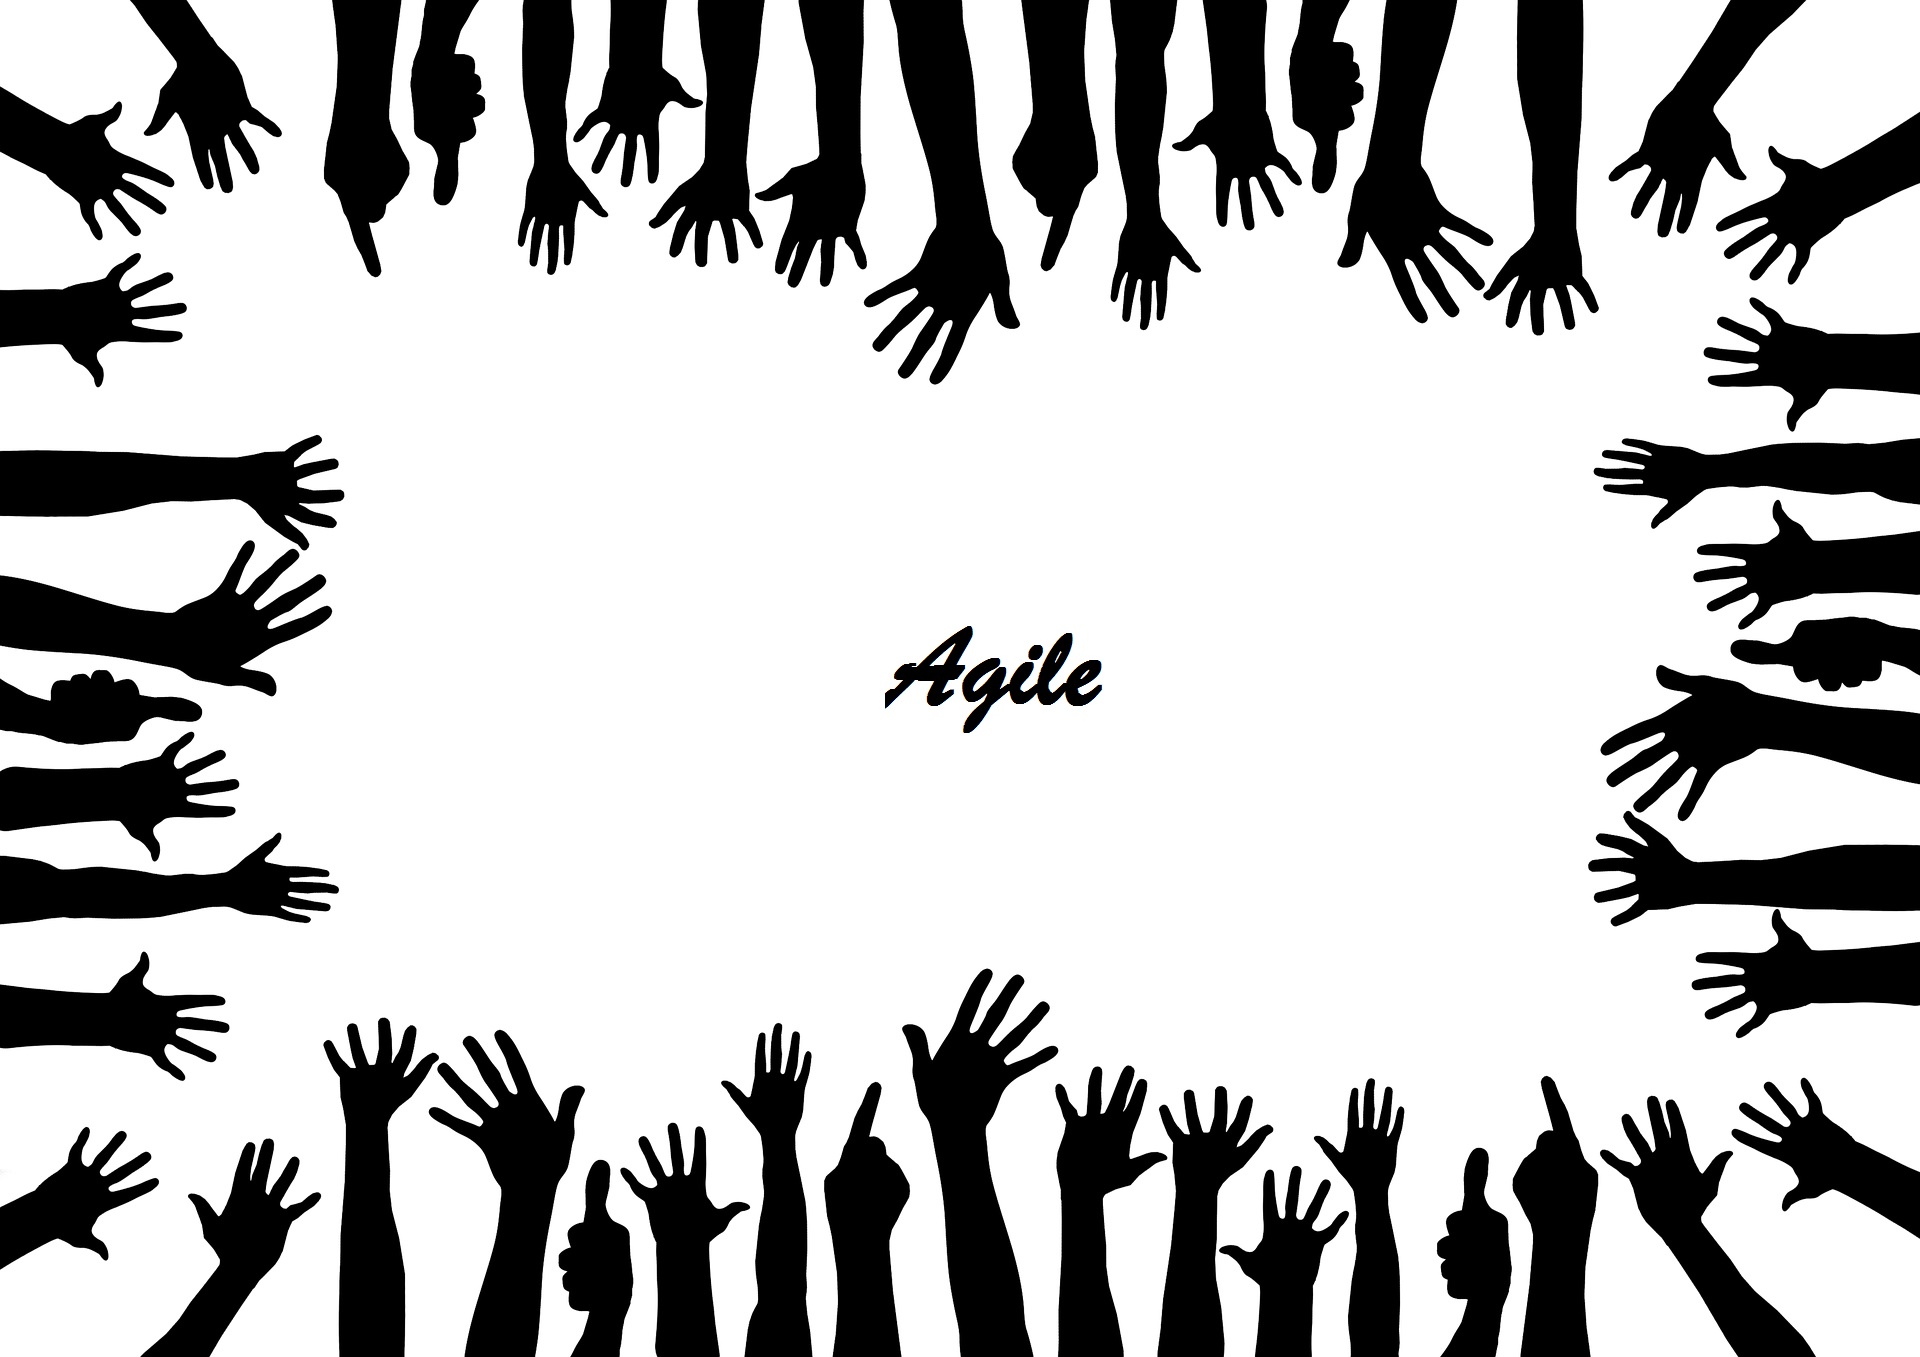 руки, Agile, методология Agile, методы Agile, манифест, гибкий подход, ПО, программное обеспечение, it, Иван Шкварун, партнер и коуч, что дает Agile, WTF, технологии, проекты, коллектив